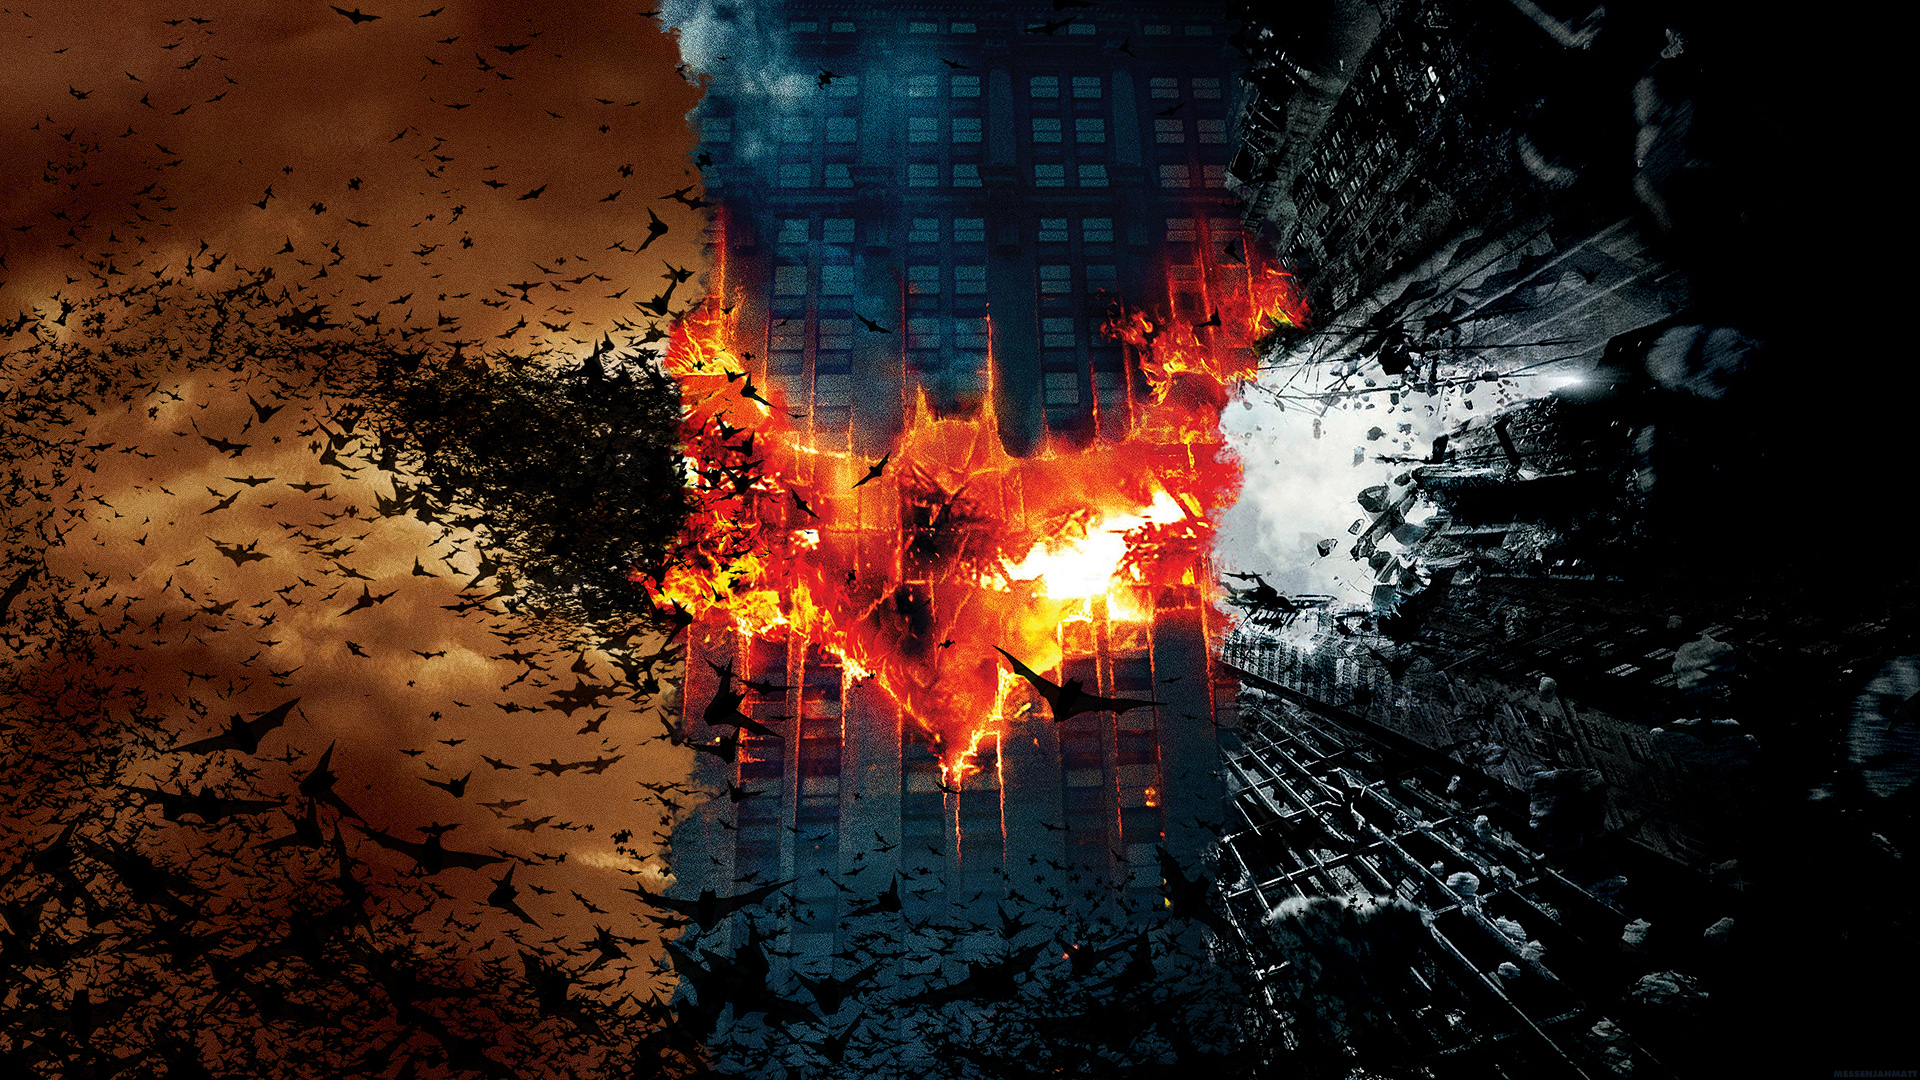 Nolan's Batman Trilogy HD Wallpapers